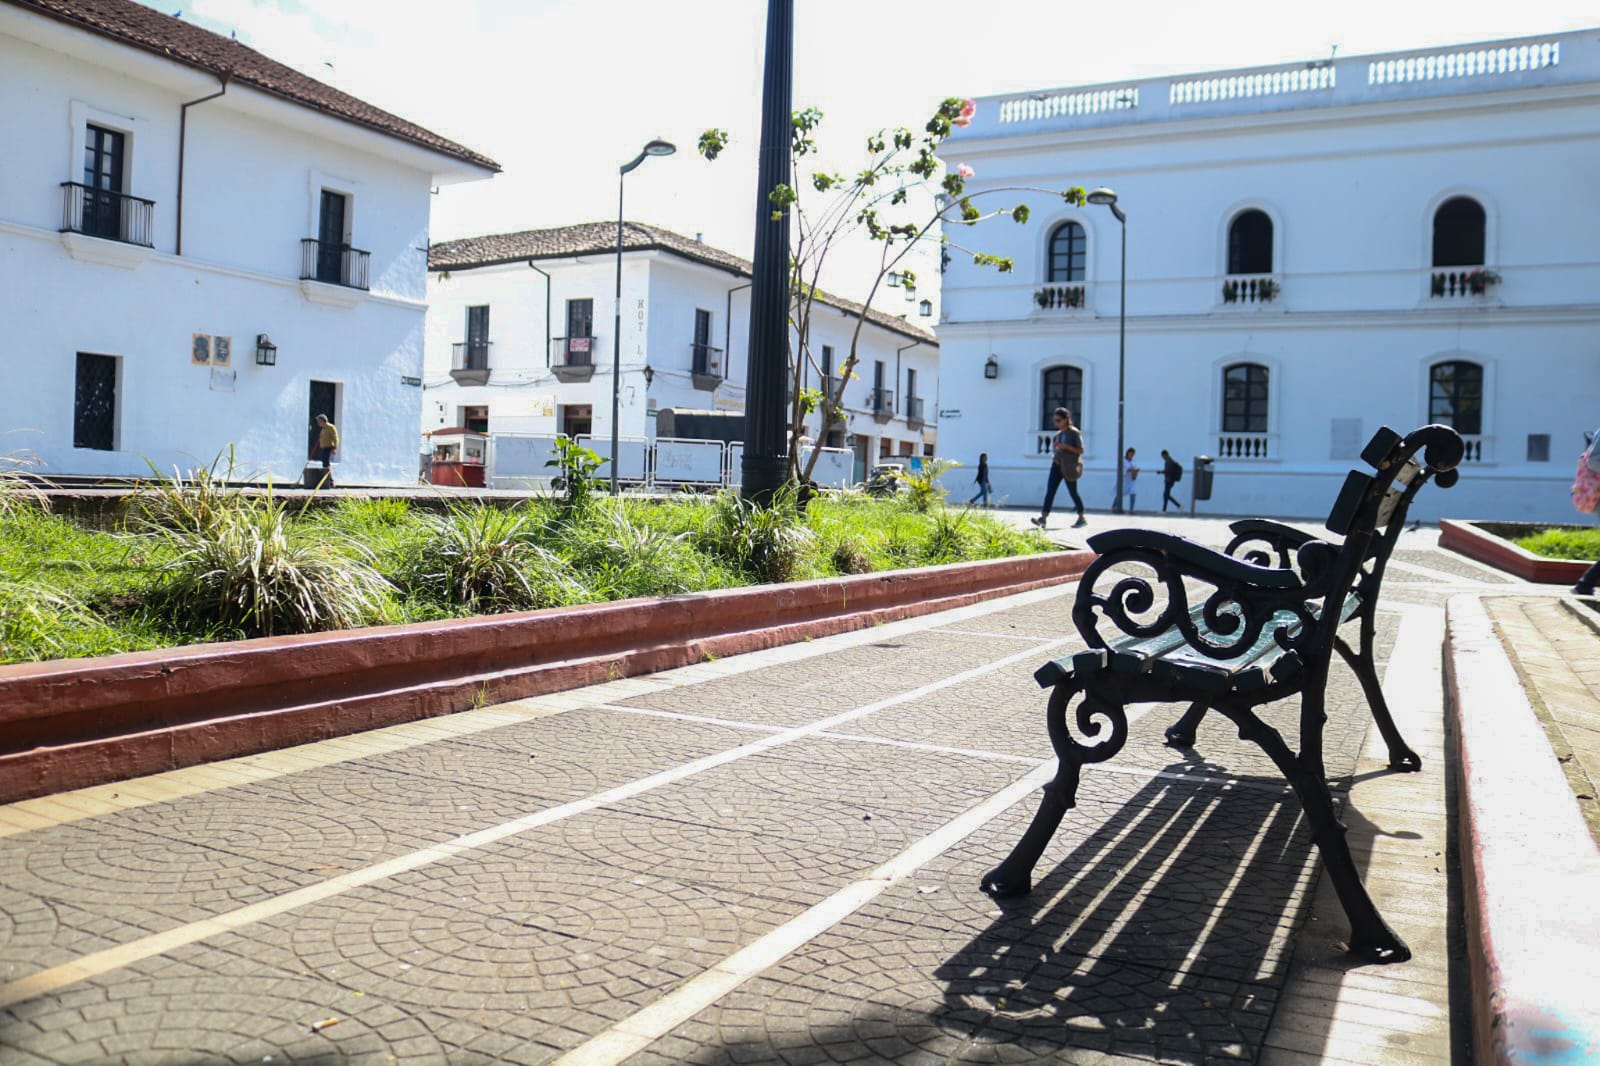 30 días para pintar fachadas en el Centro Histórico de Popayán